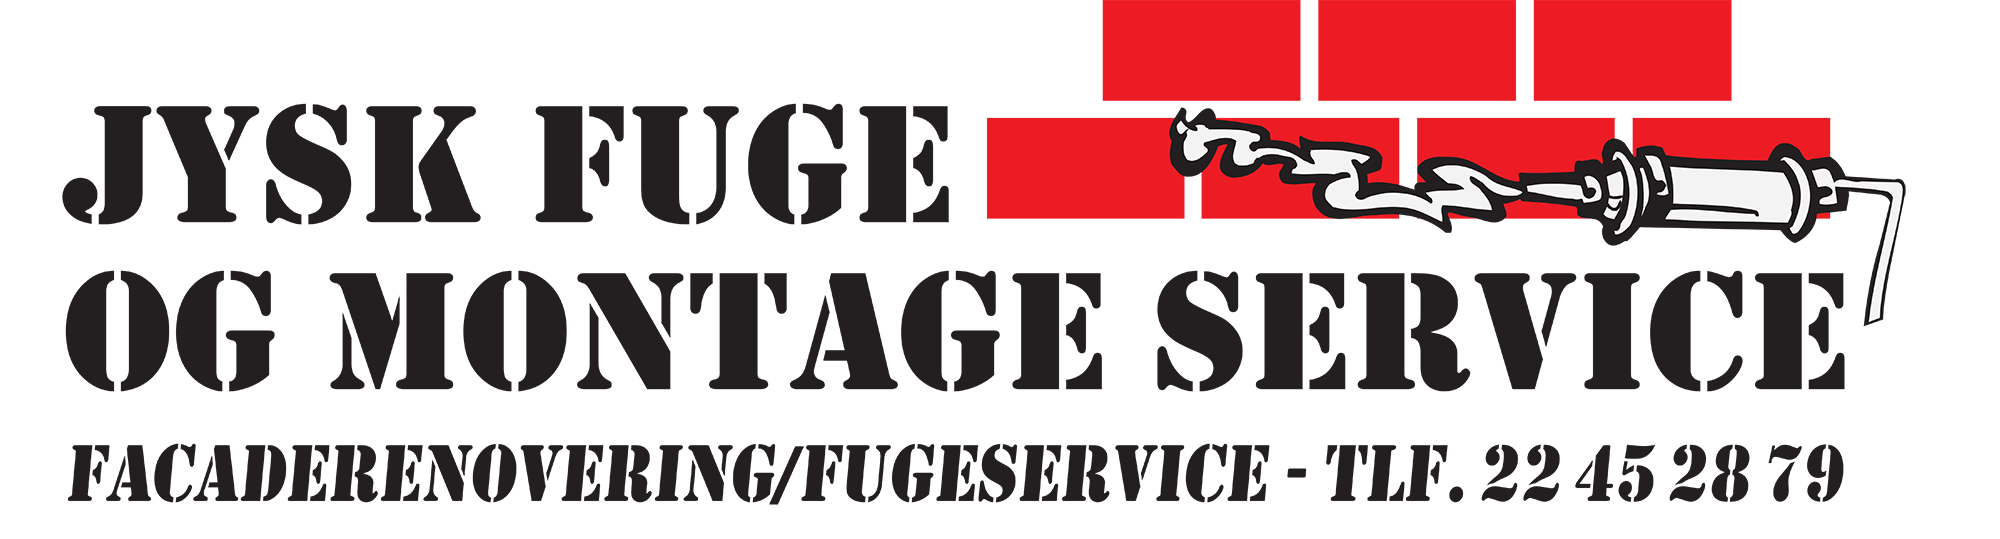 Jysk Fuge og Montage Service